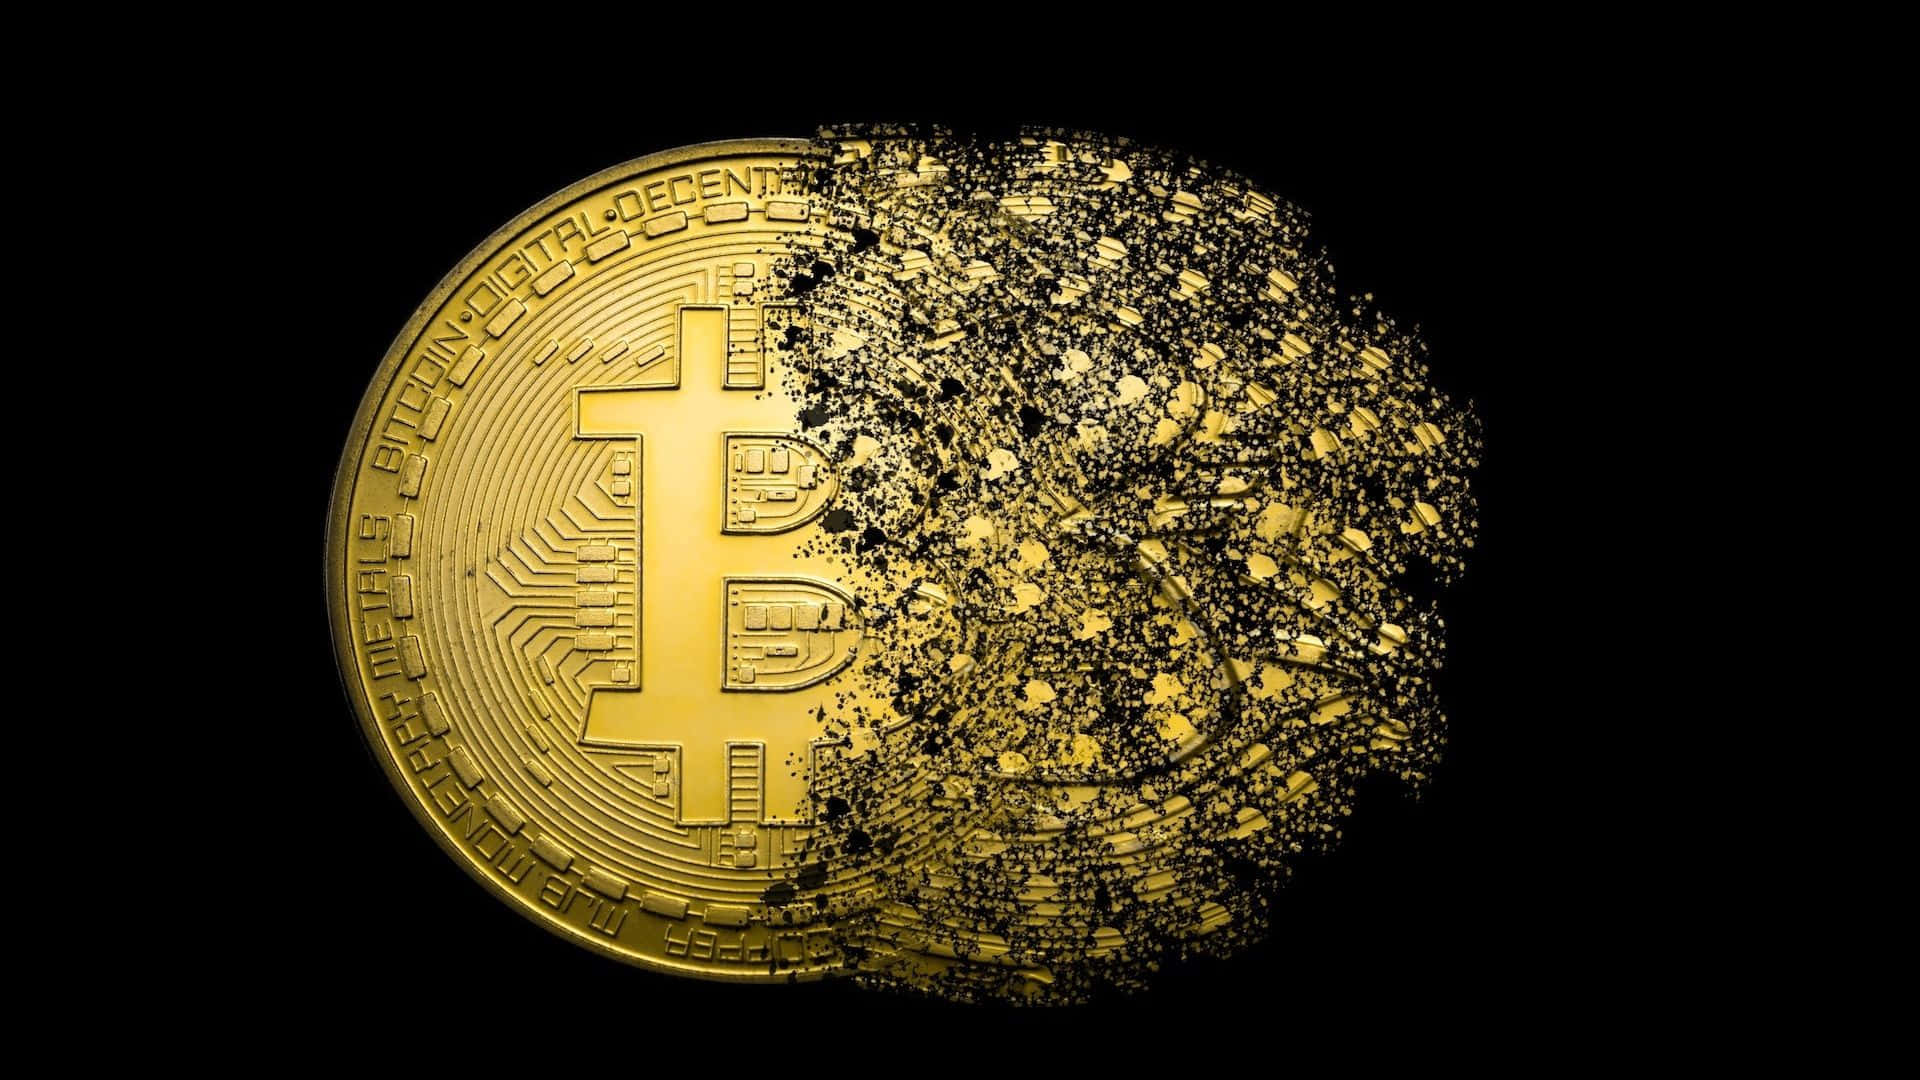 Enguld Bitcoin-mynt Visas På En Svart Bakgrund. Wallpaper